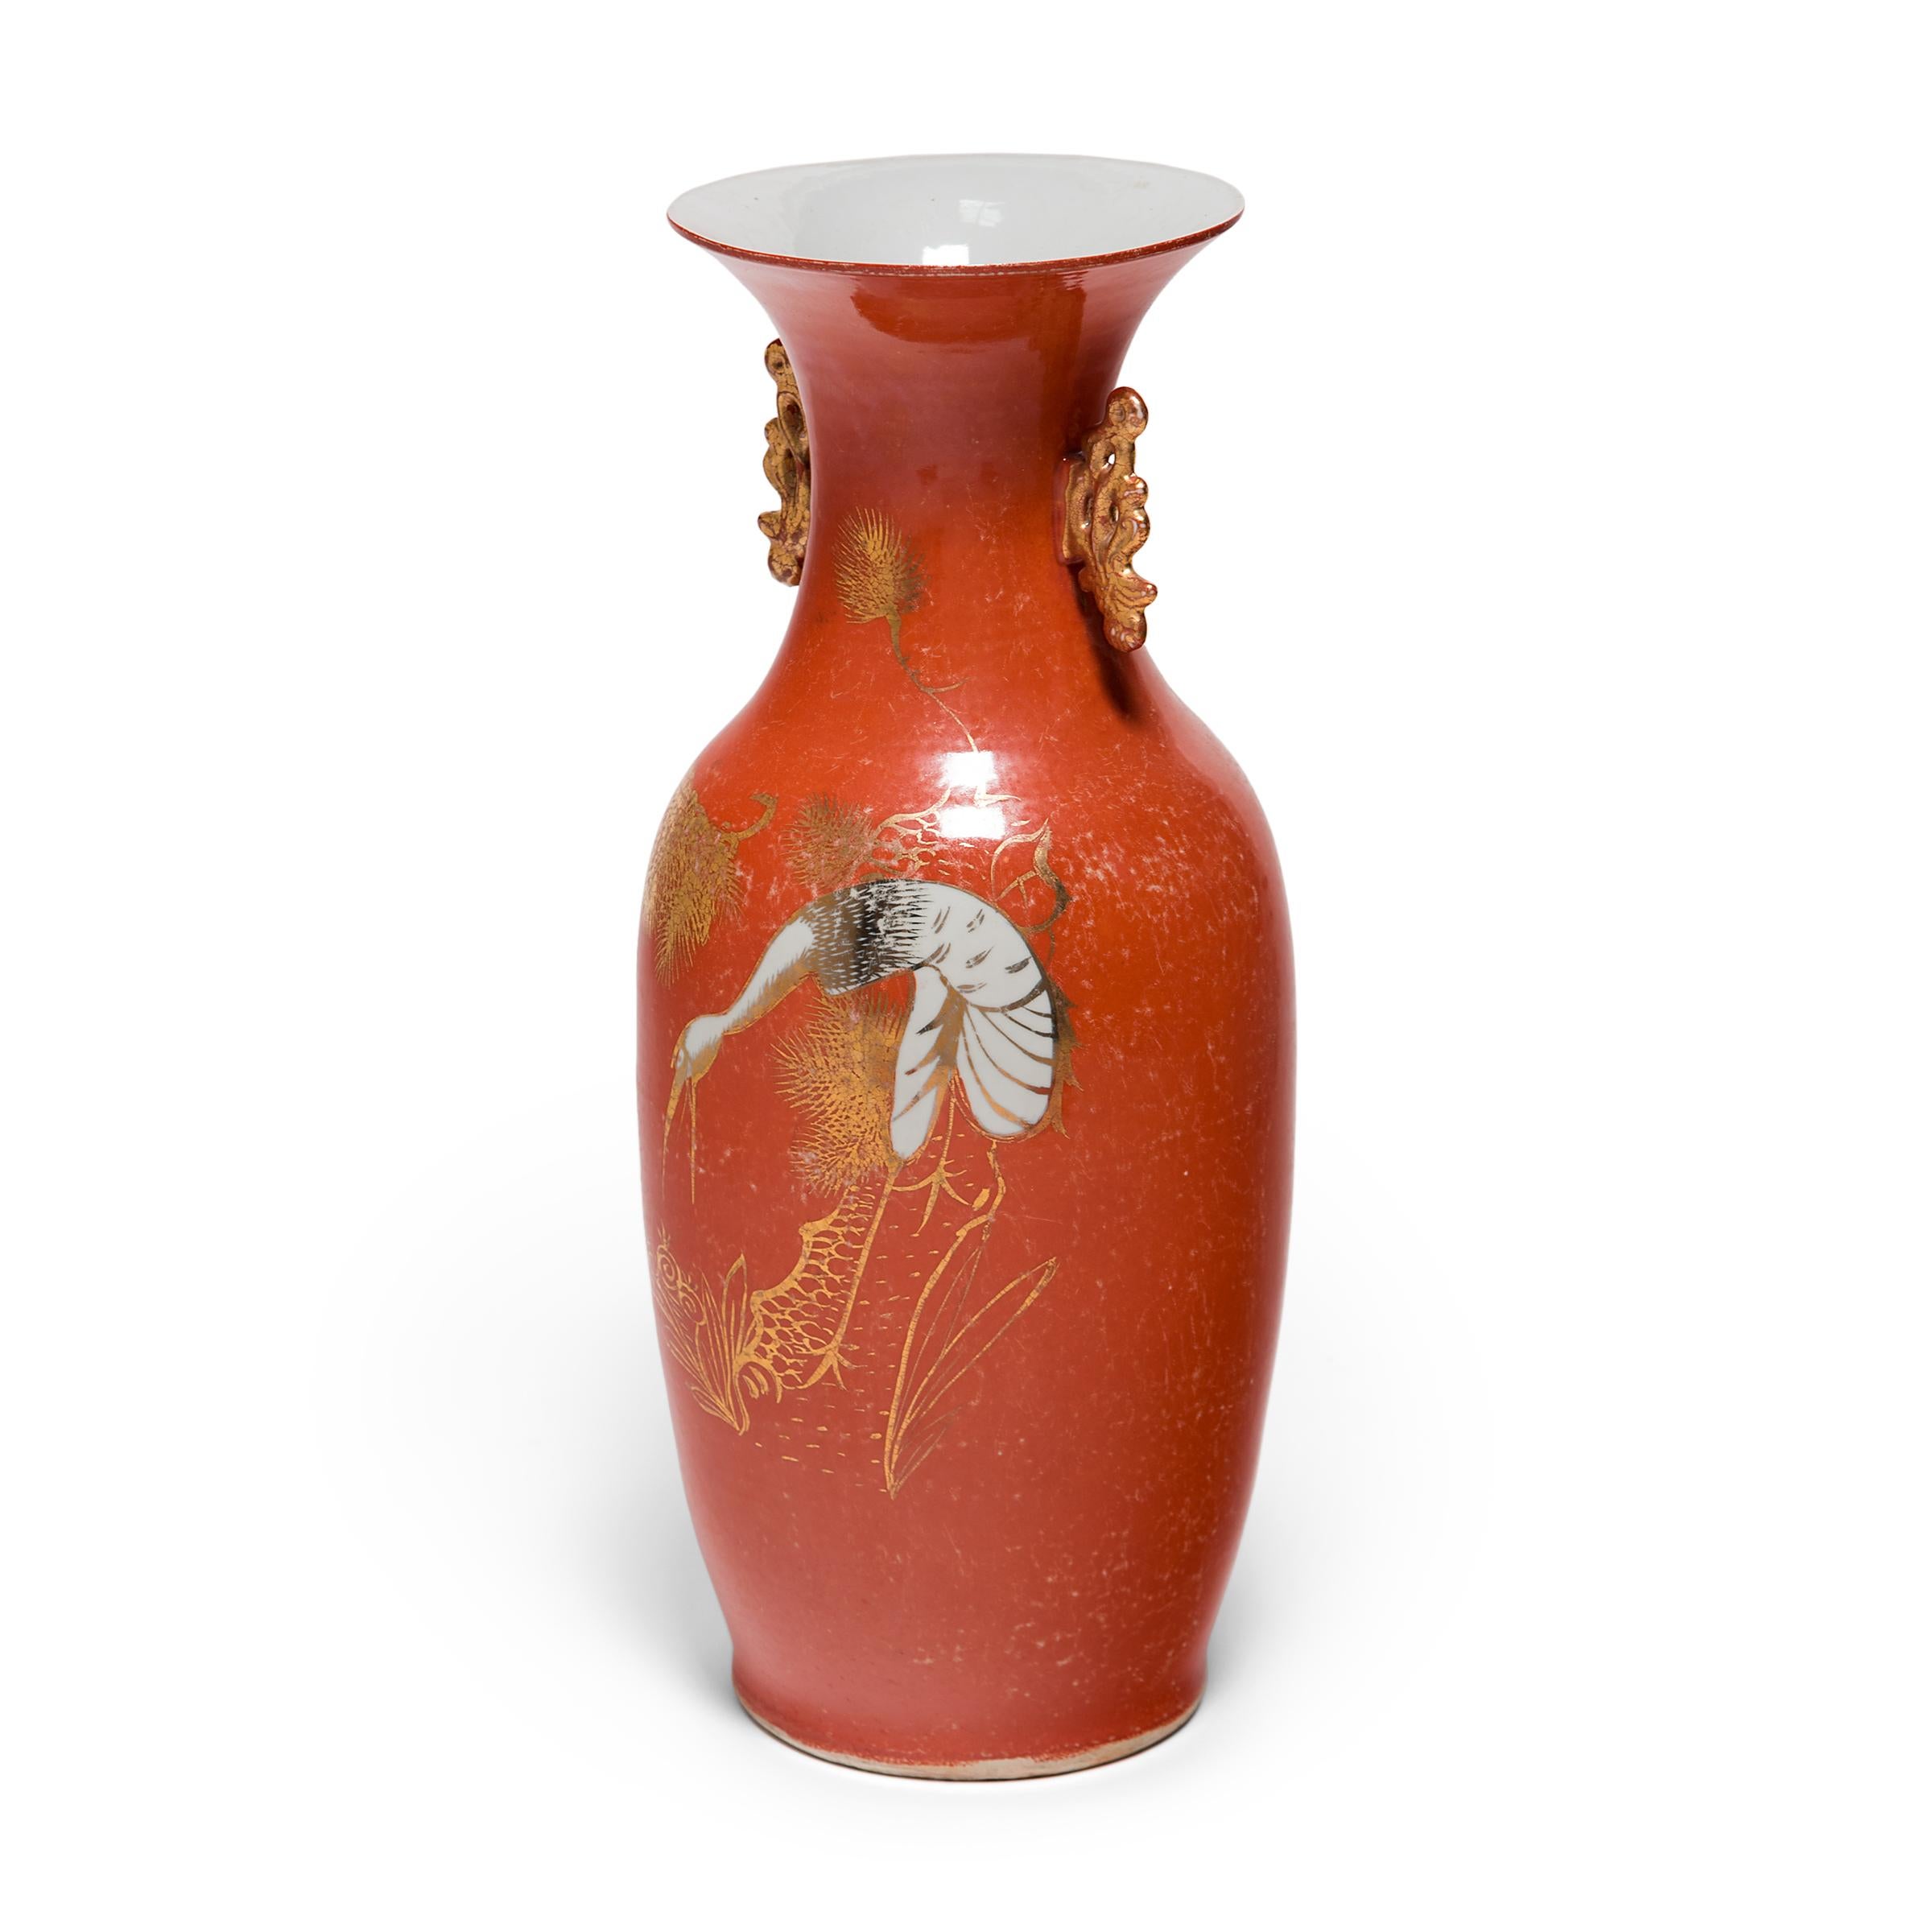 Diese Porzellanvase aus den 1920er Jahren, die sich an die dauerhafte Form des Phönixschwanzes aus der chinesischen Bronzezeit anlehnt, zeigt die geschwungenen Linien und die vergoldete Raffinesse, die den Art-déco-Stil des frühen 20. Jahrhunderts